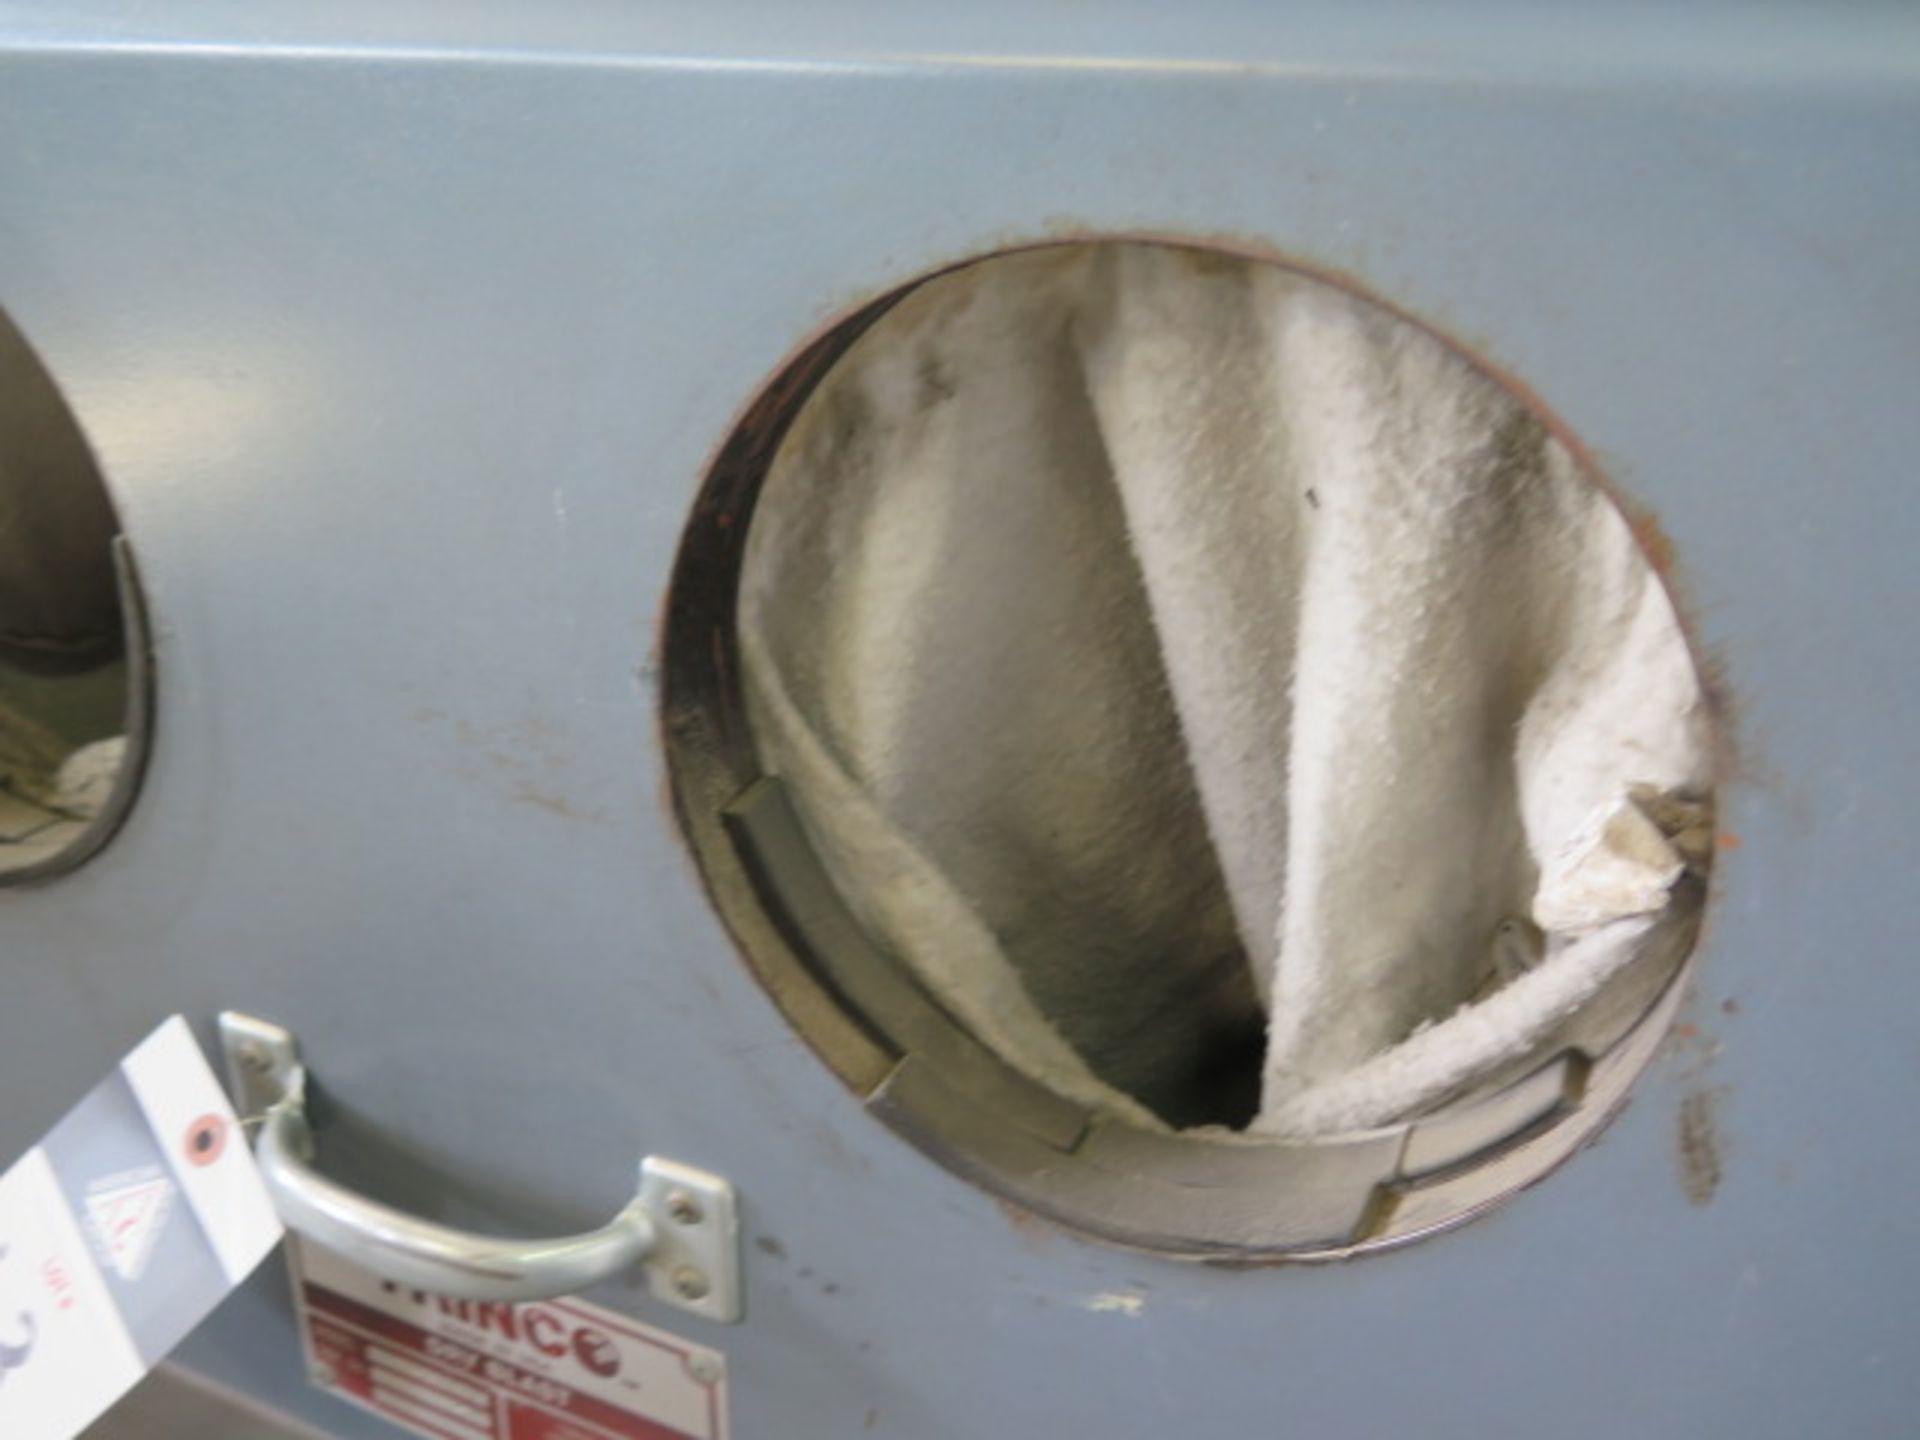 Trinco mdl. 40X40SL/BP 40” x 40” Flip-Top Dry Blast Cabinet s/n 61797-5 SOLD AS IS - Image 5 of 9